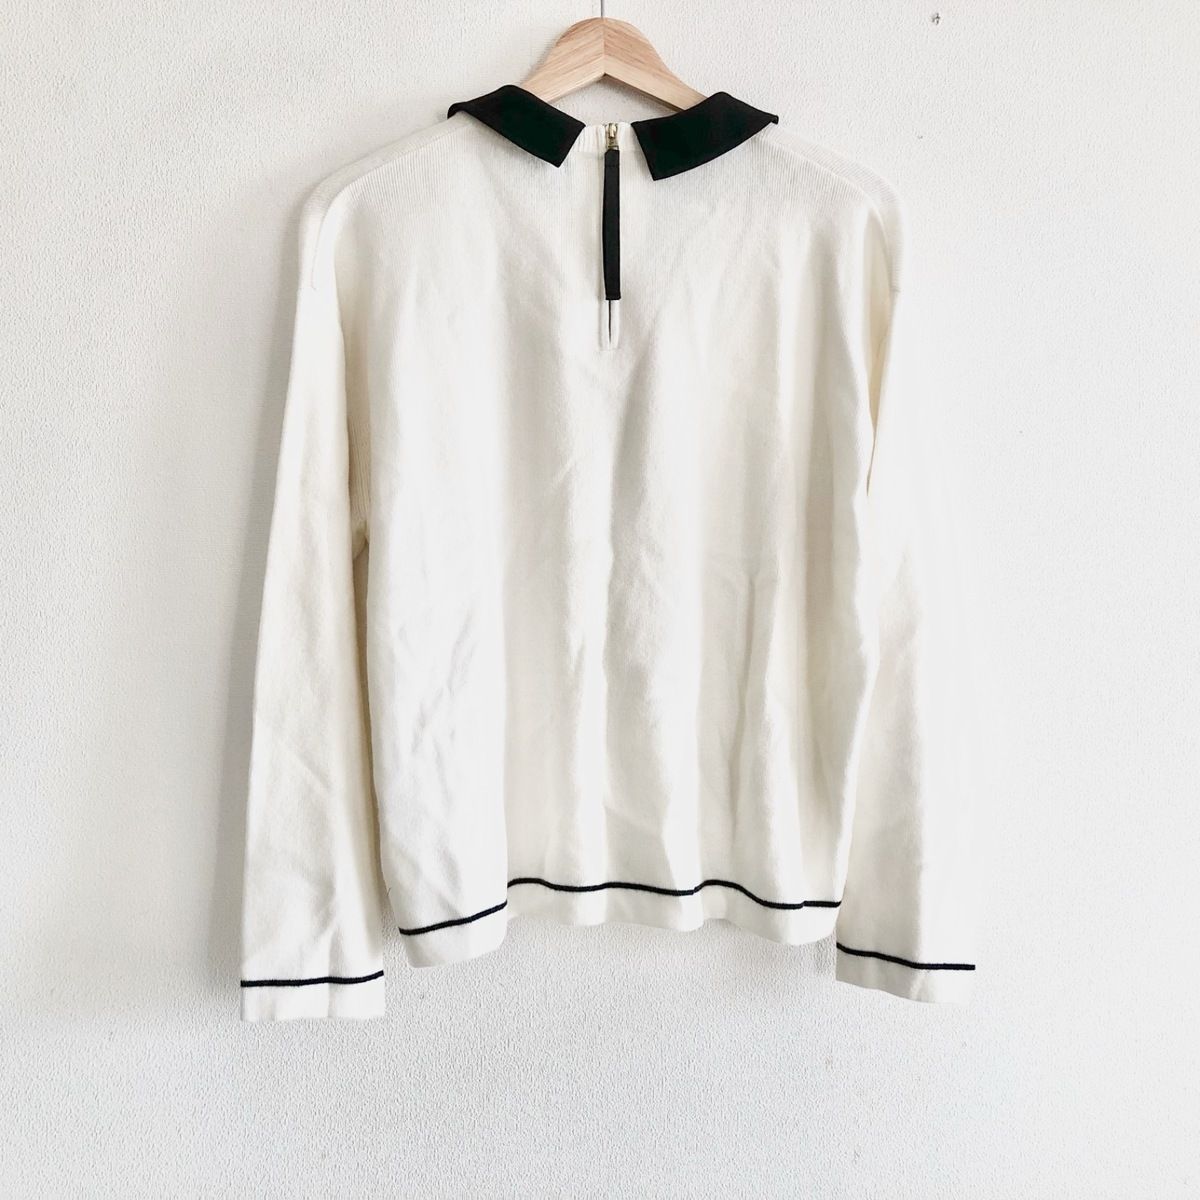 Rose Tiara(ローズティアラ) 長袖セーター サイズ42 L レディース美品  - 白×黒 ビジュー/付け襟 ナイロン、アクリル